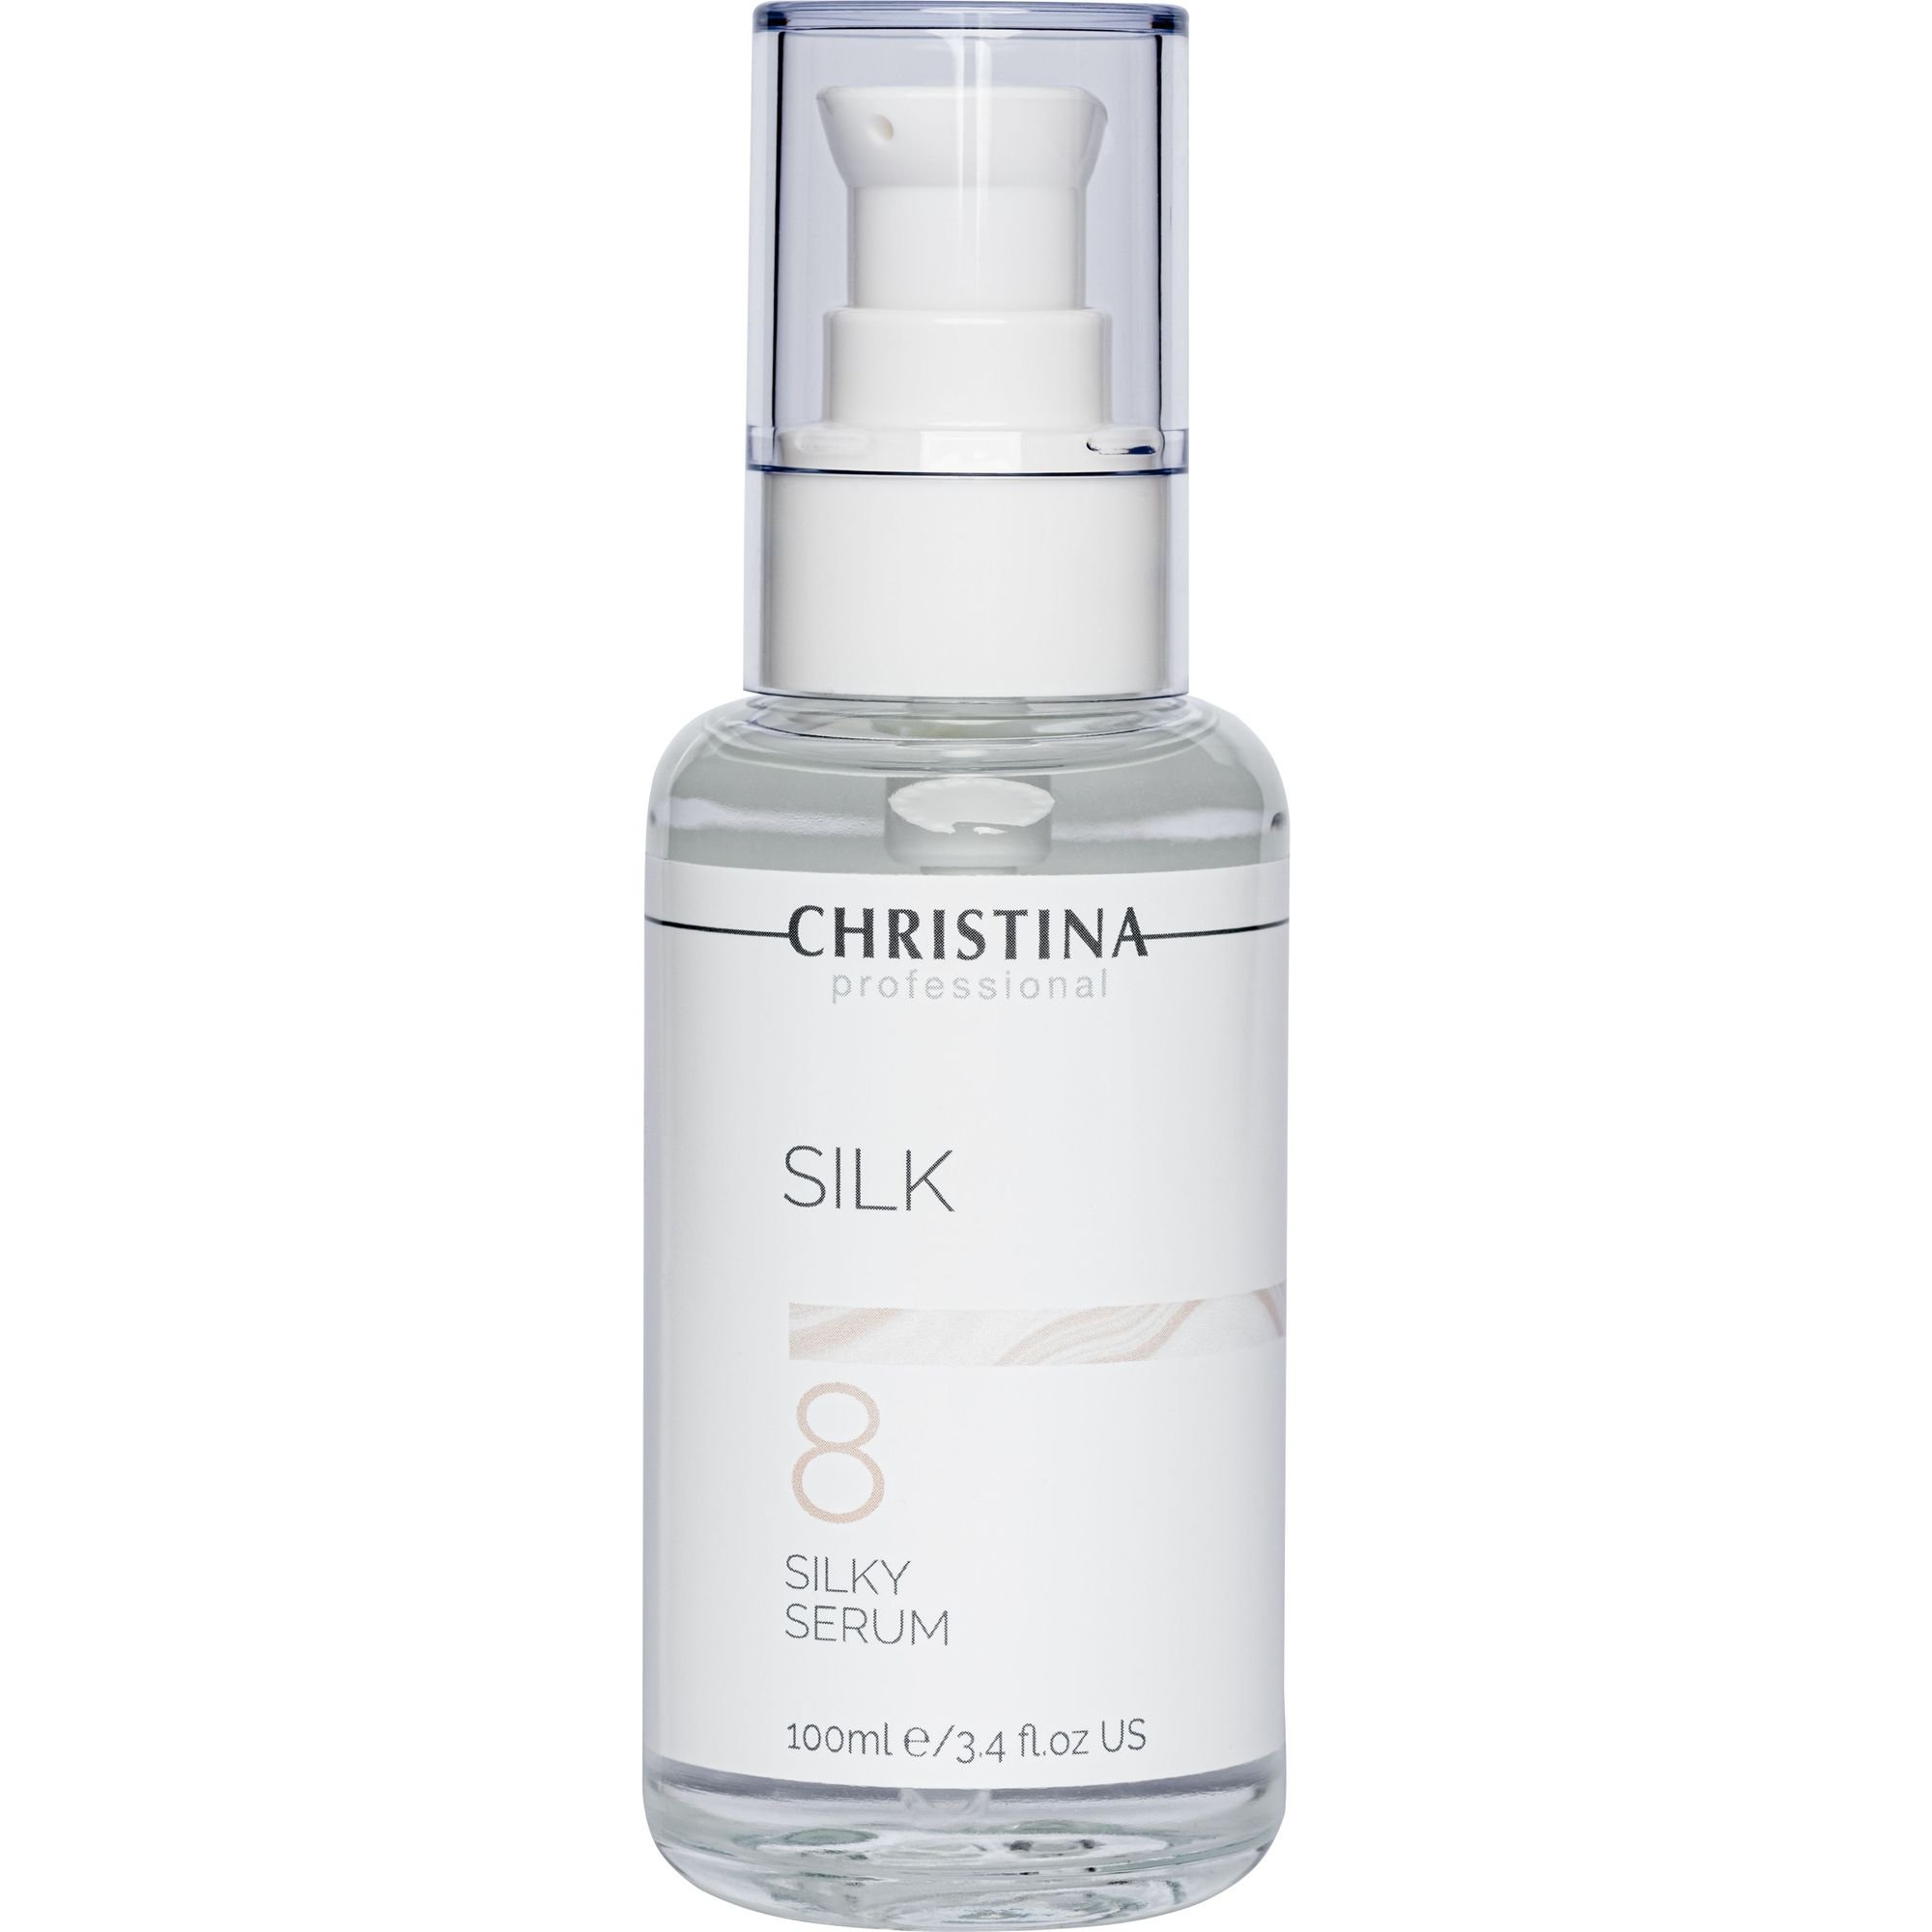 Сыворотка для выравнивания морщин Christina Silk Silky Serum 100 мл - фото 1